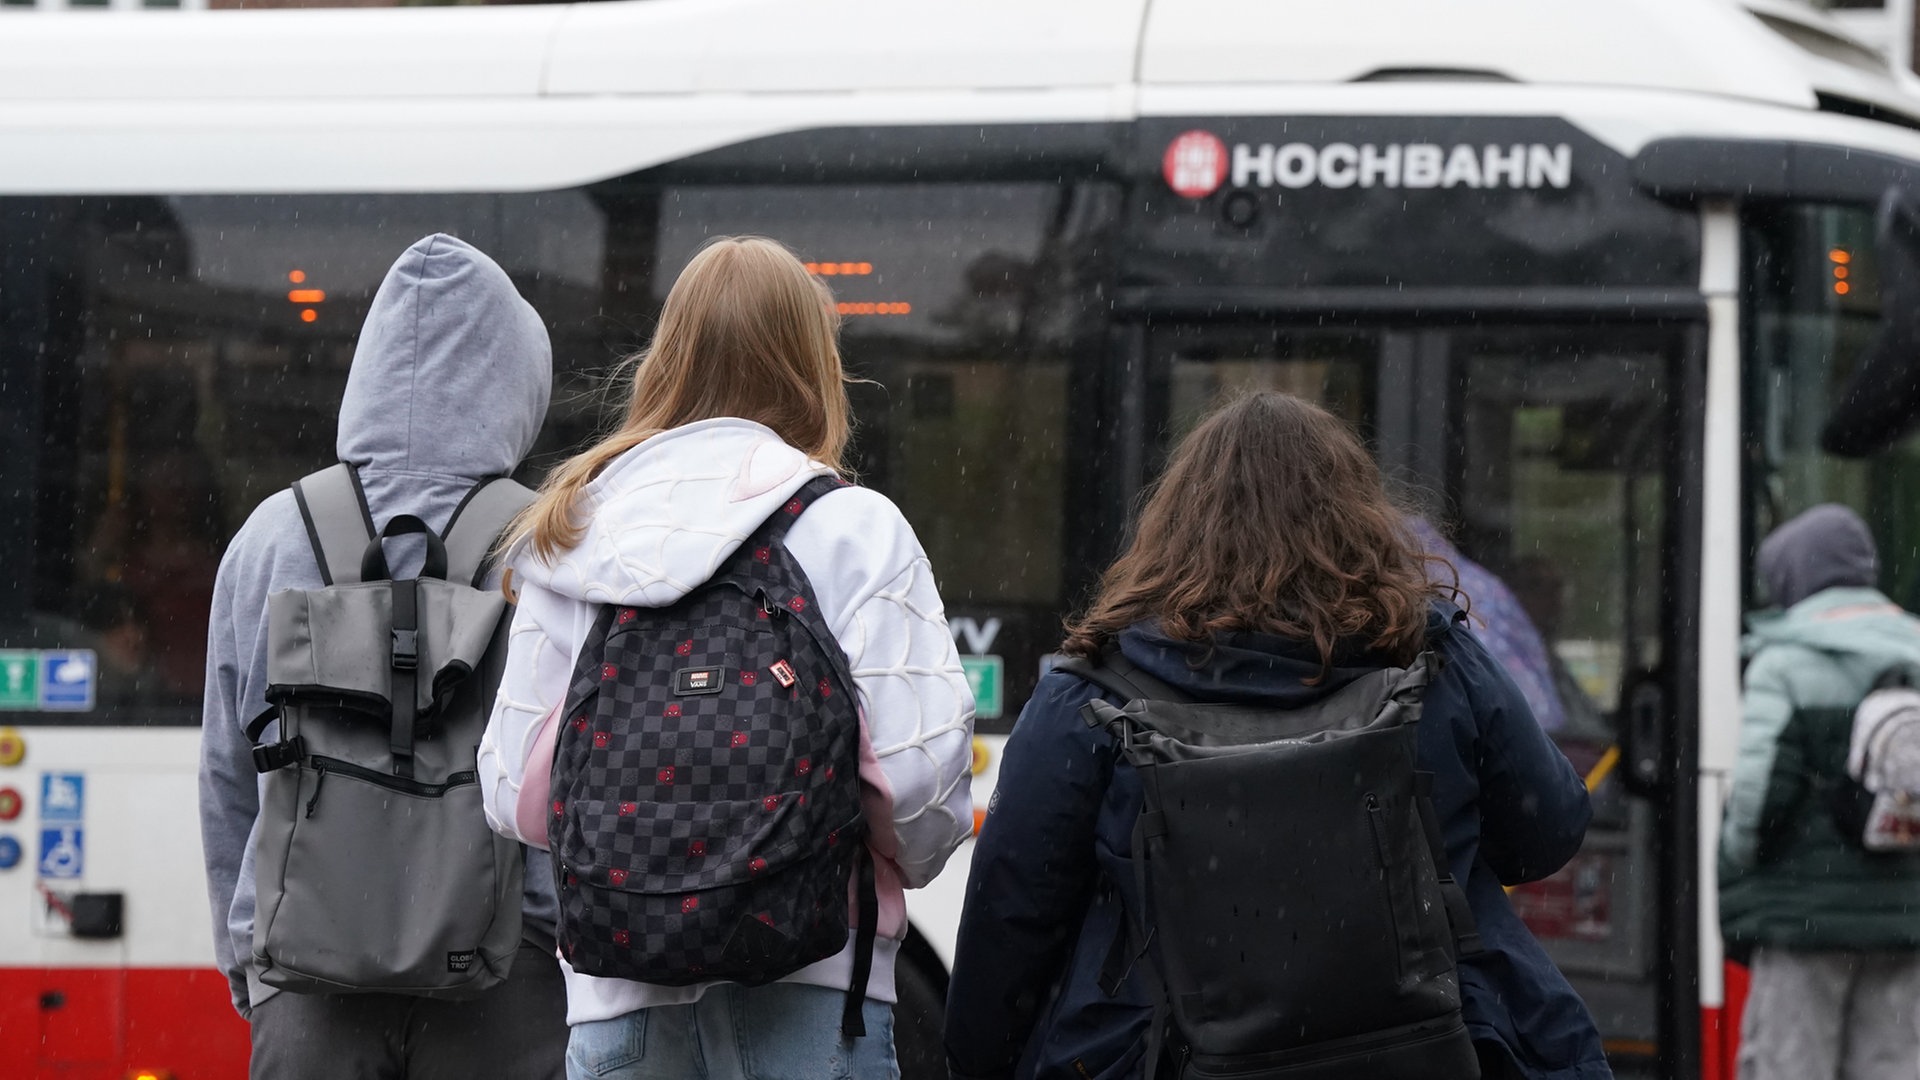 Kostenloses Deutschlandticket für Hamburgs Schüler: So läuft die Umstellung